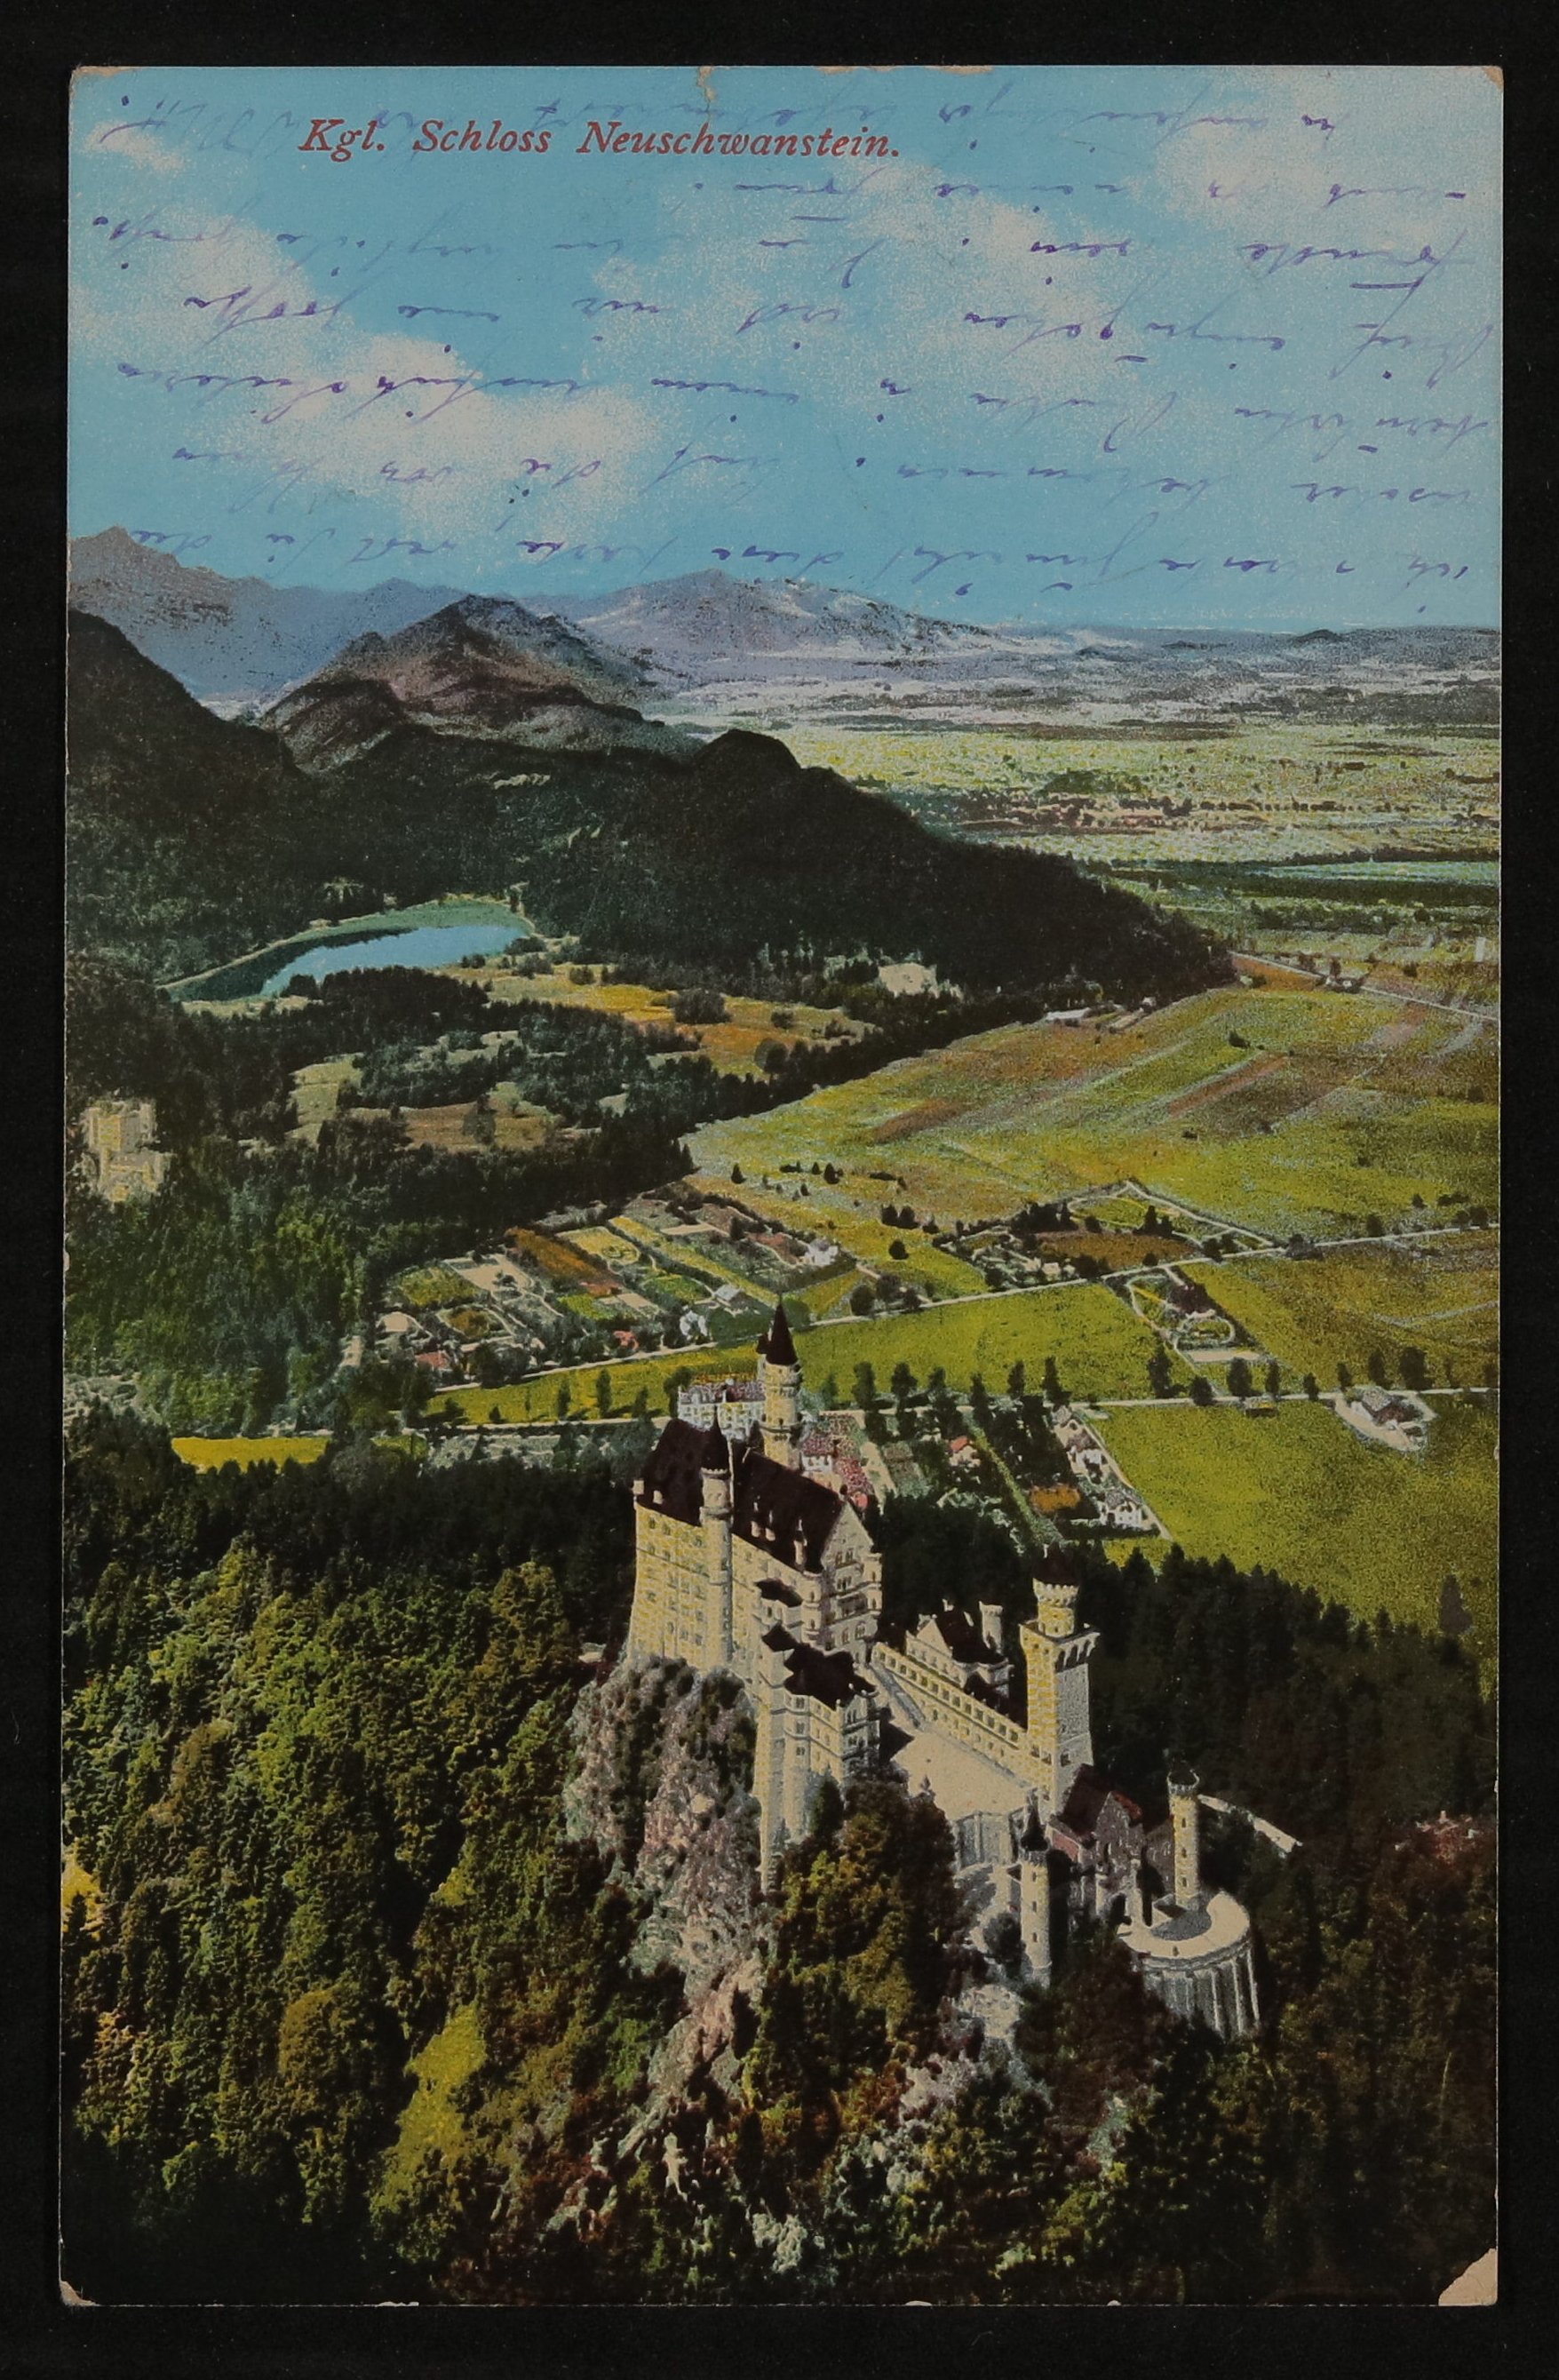 Ansichtskarte von Willy Müller-Hofmann an Hofmannsthal mit kolorierter Ansicht von Schloss Neuschwanstein mit Landschaft (Freies Deutsches Hochstift / Frankfurter Goethe-Museum CC BY-NC-SA)